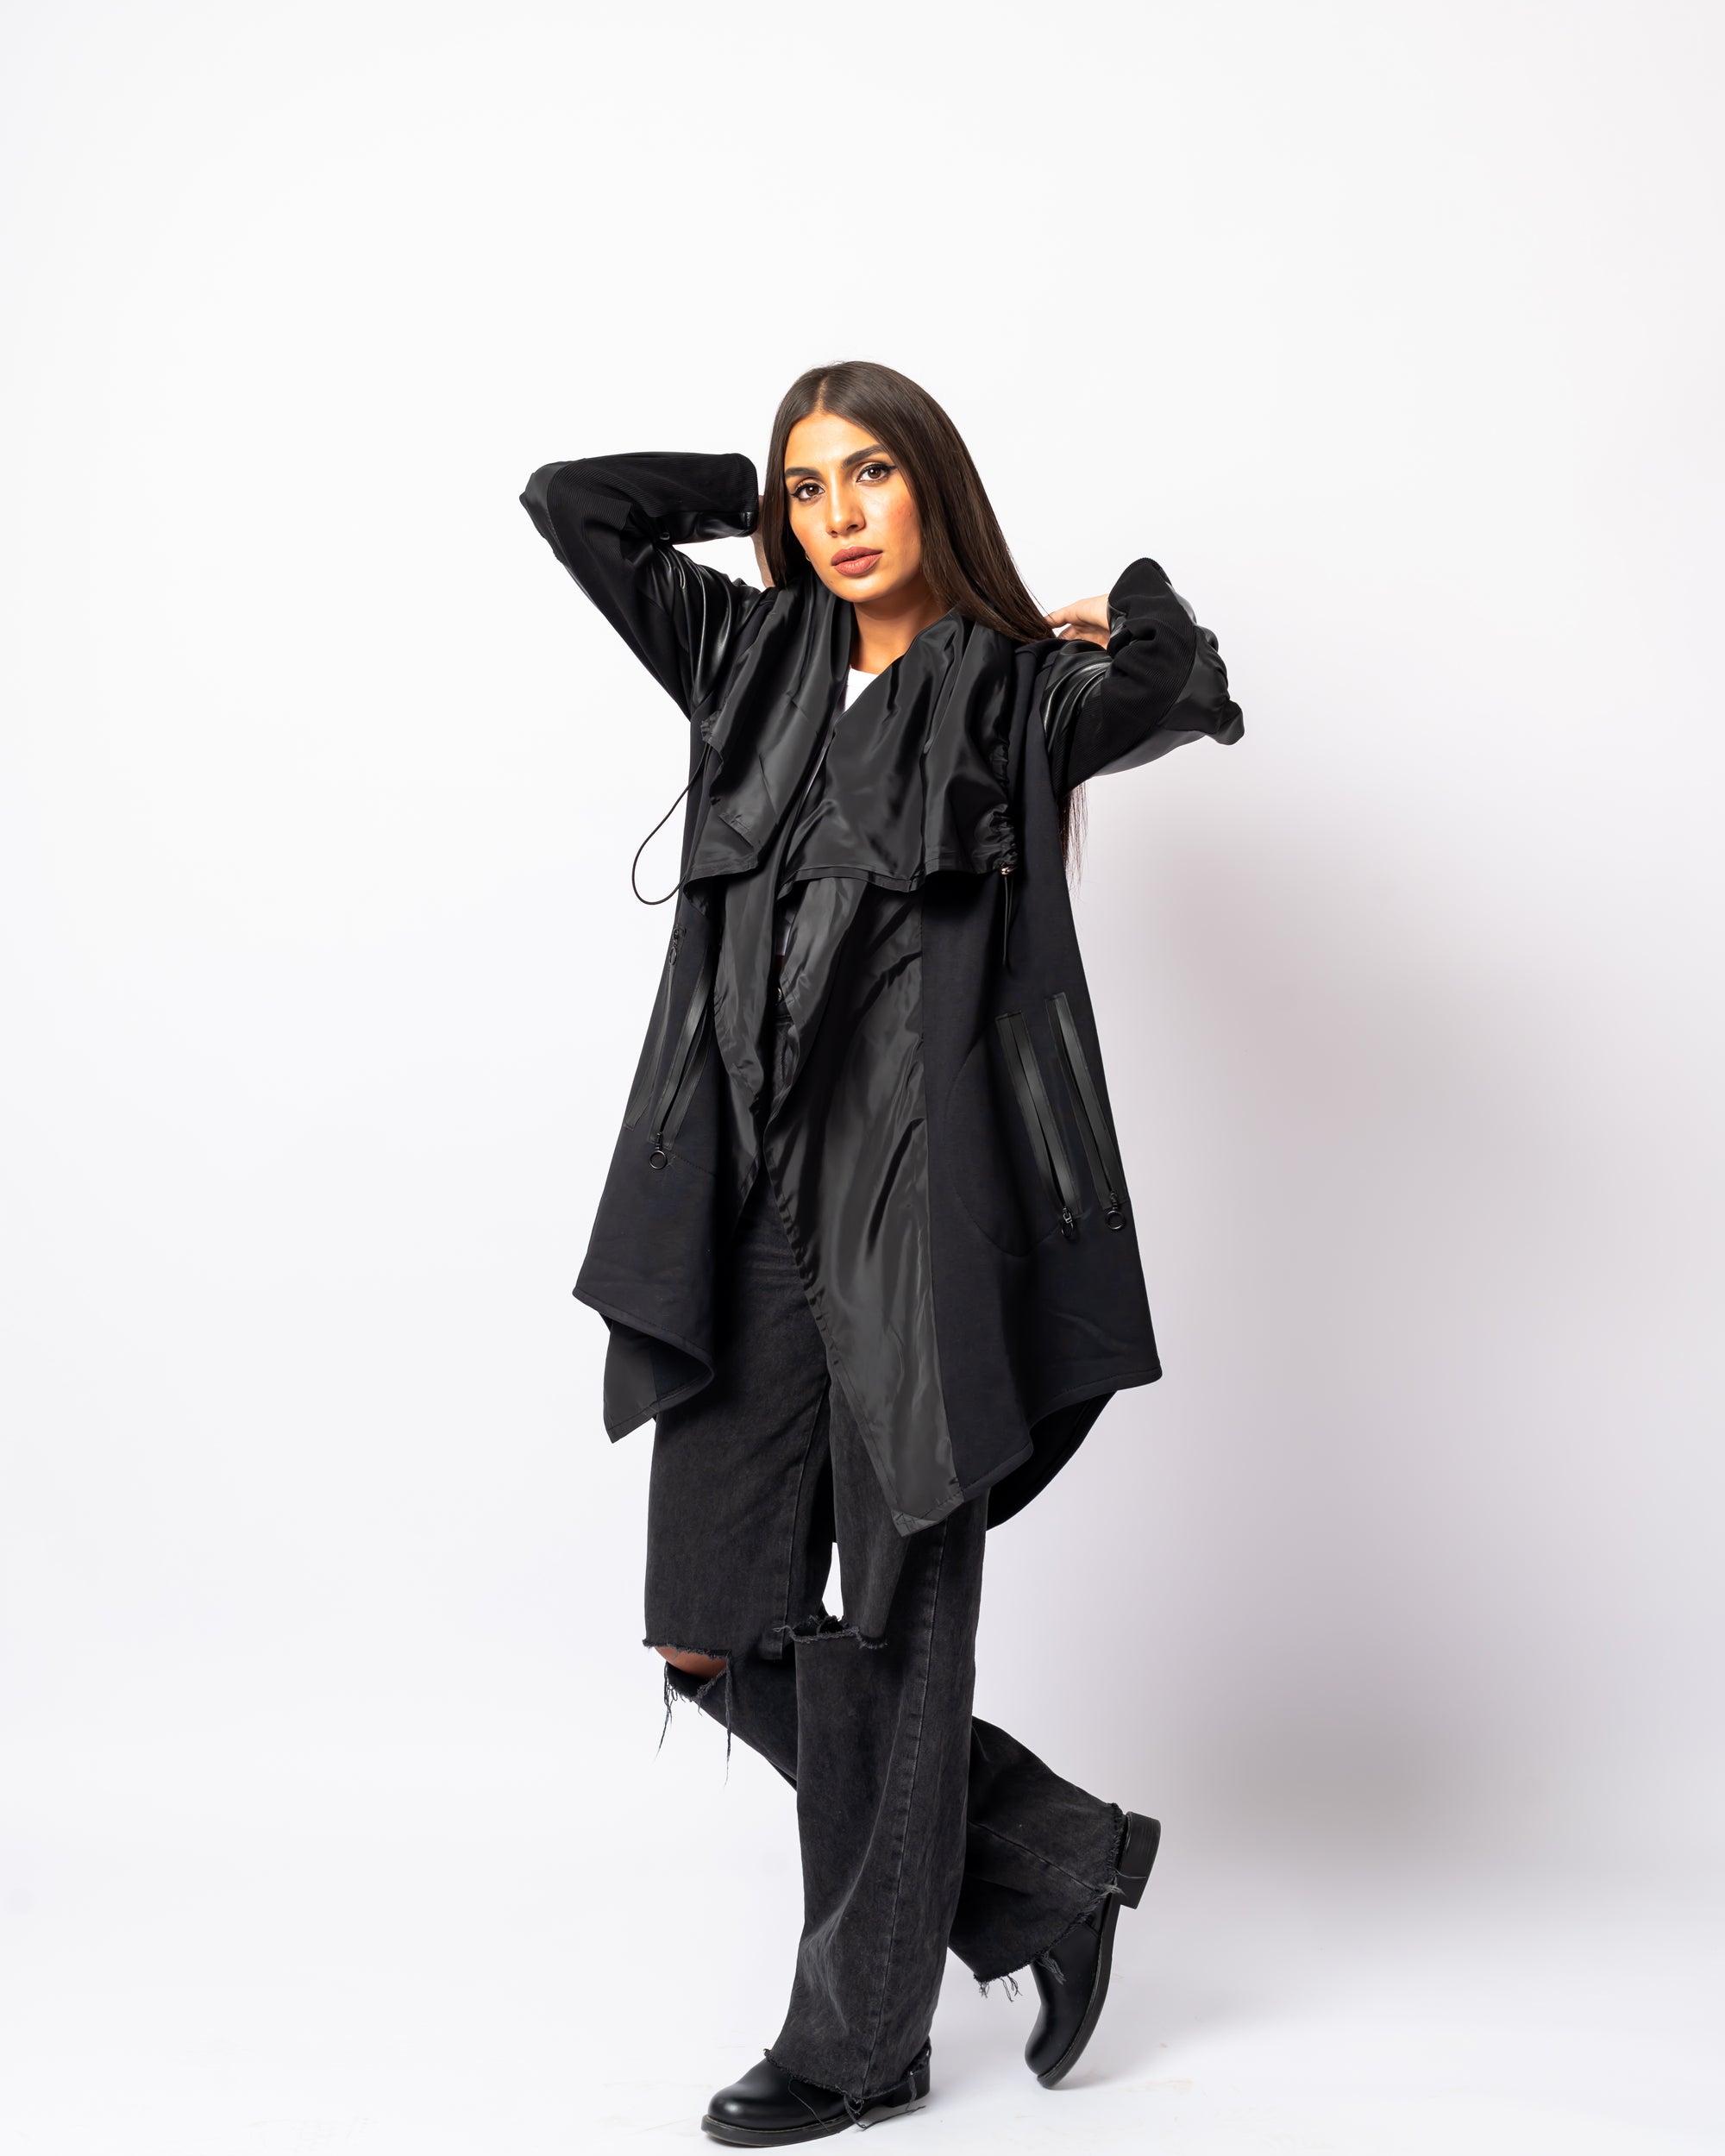 The Fleece Black Leather Jacket - Theyab